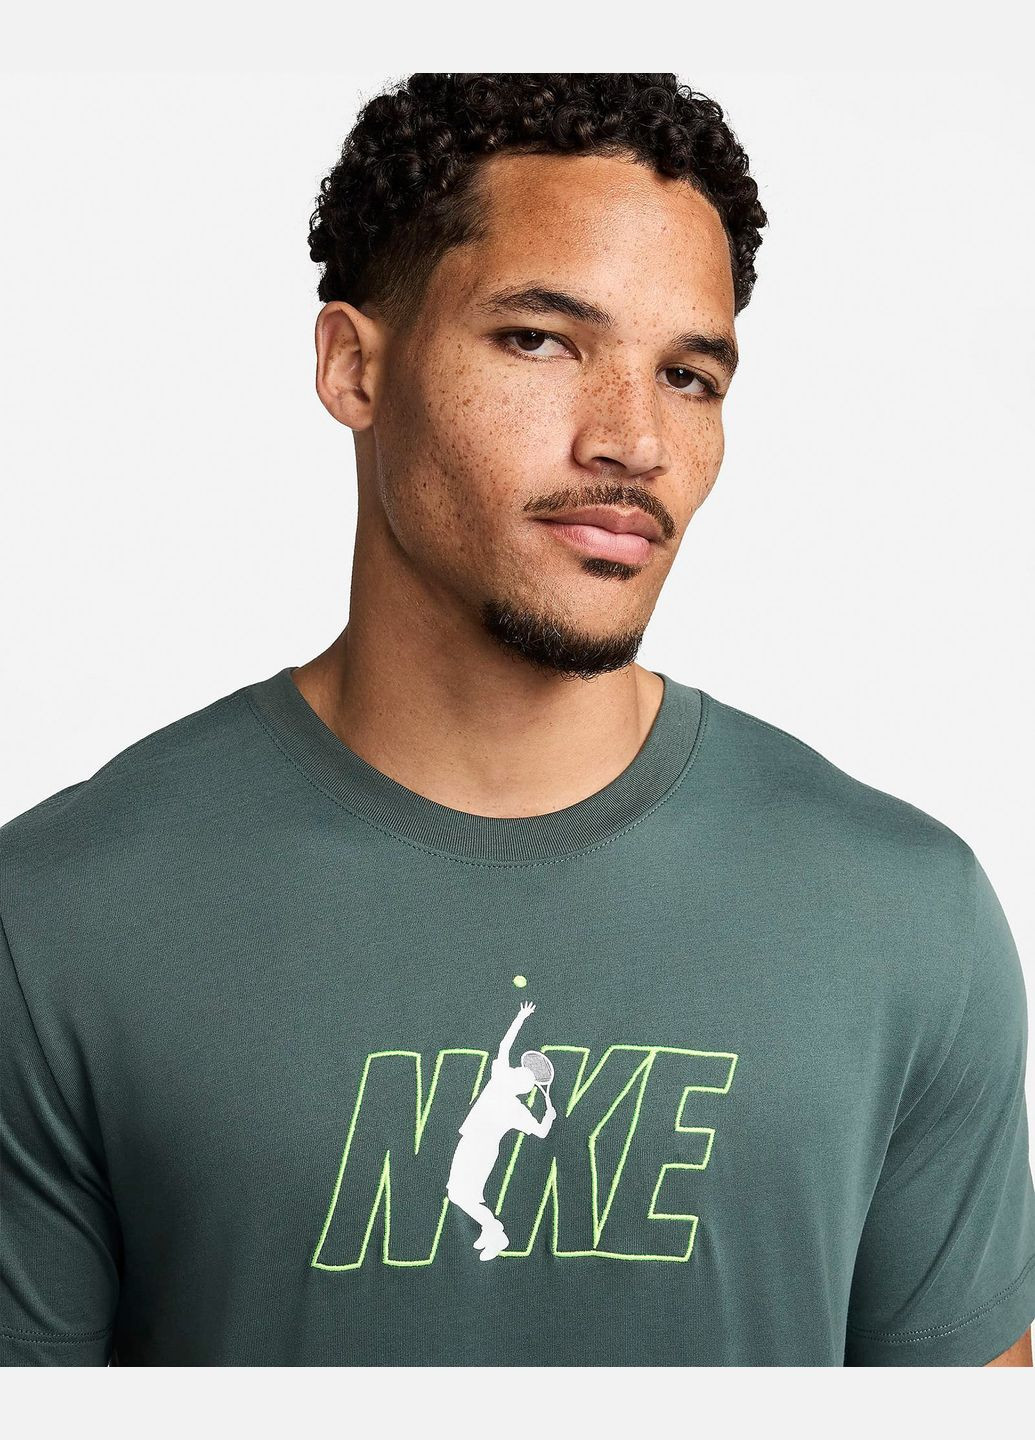 Зелена футболка чоловіча court dri-fit tennis t-hirt fv8434-338 зелена Nike